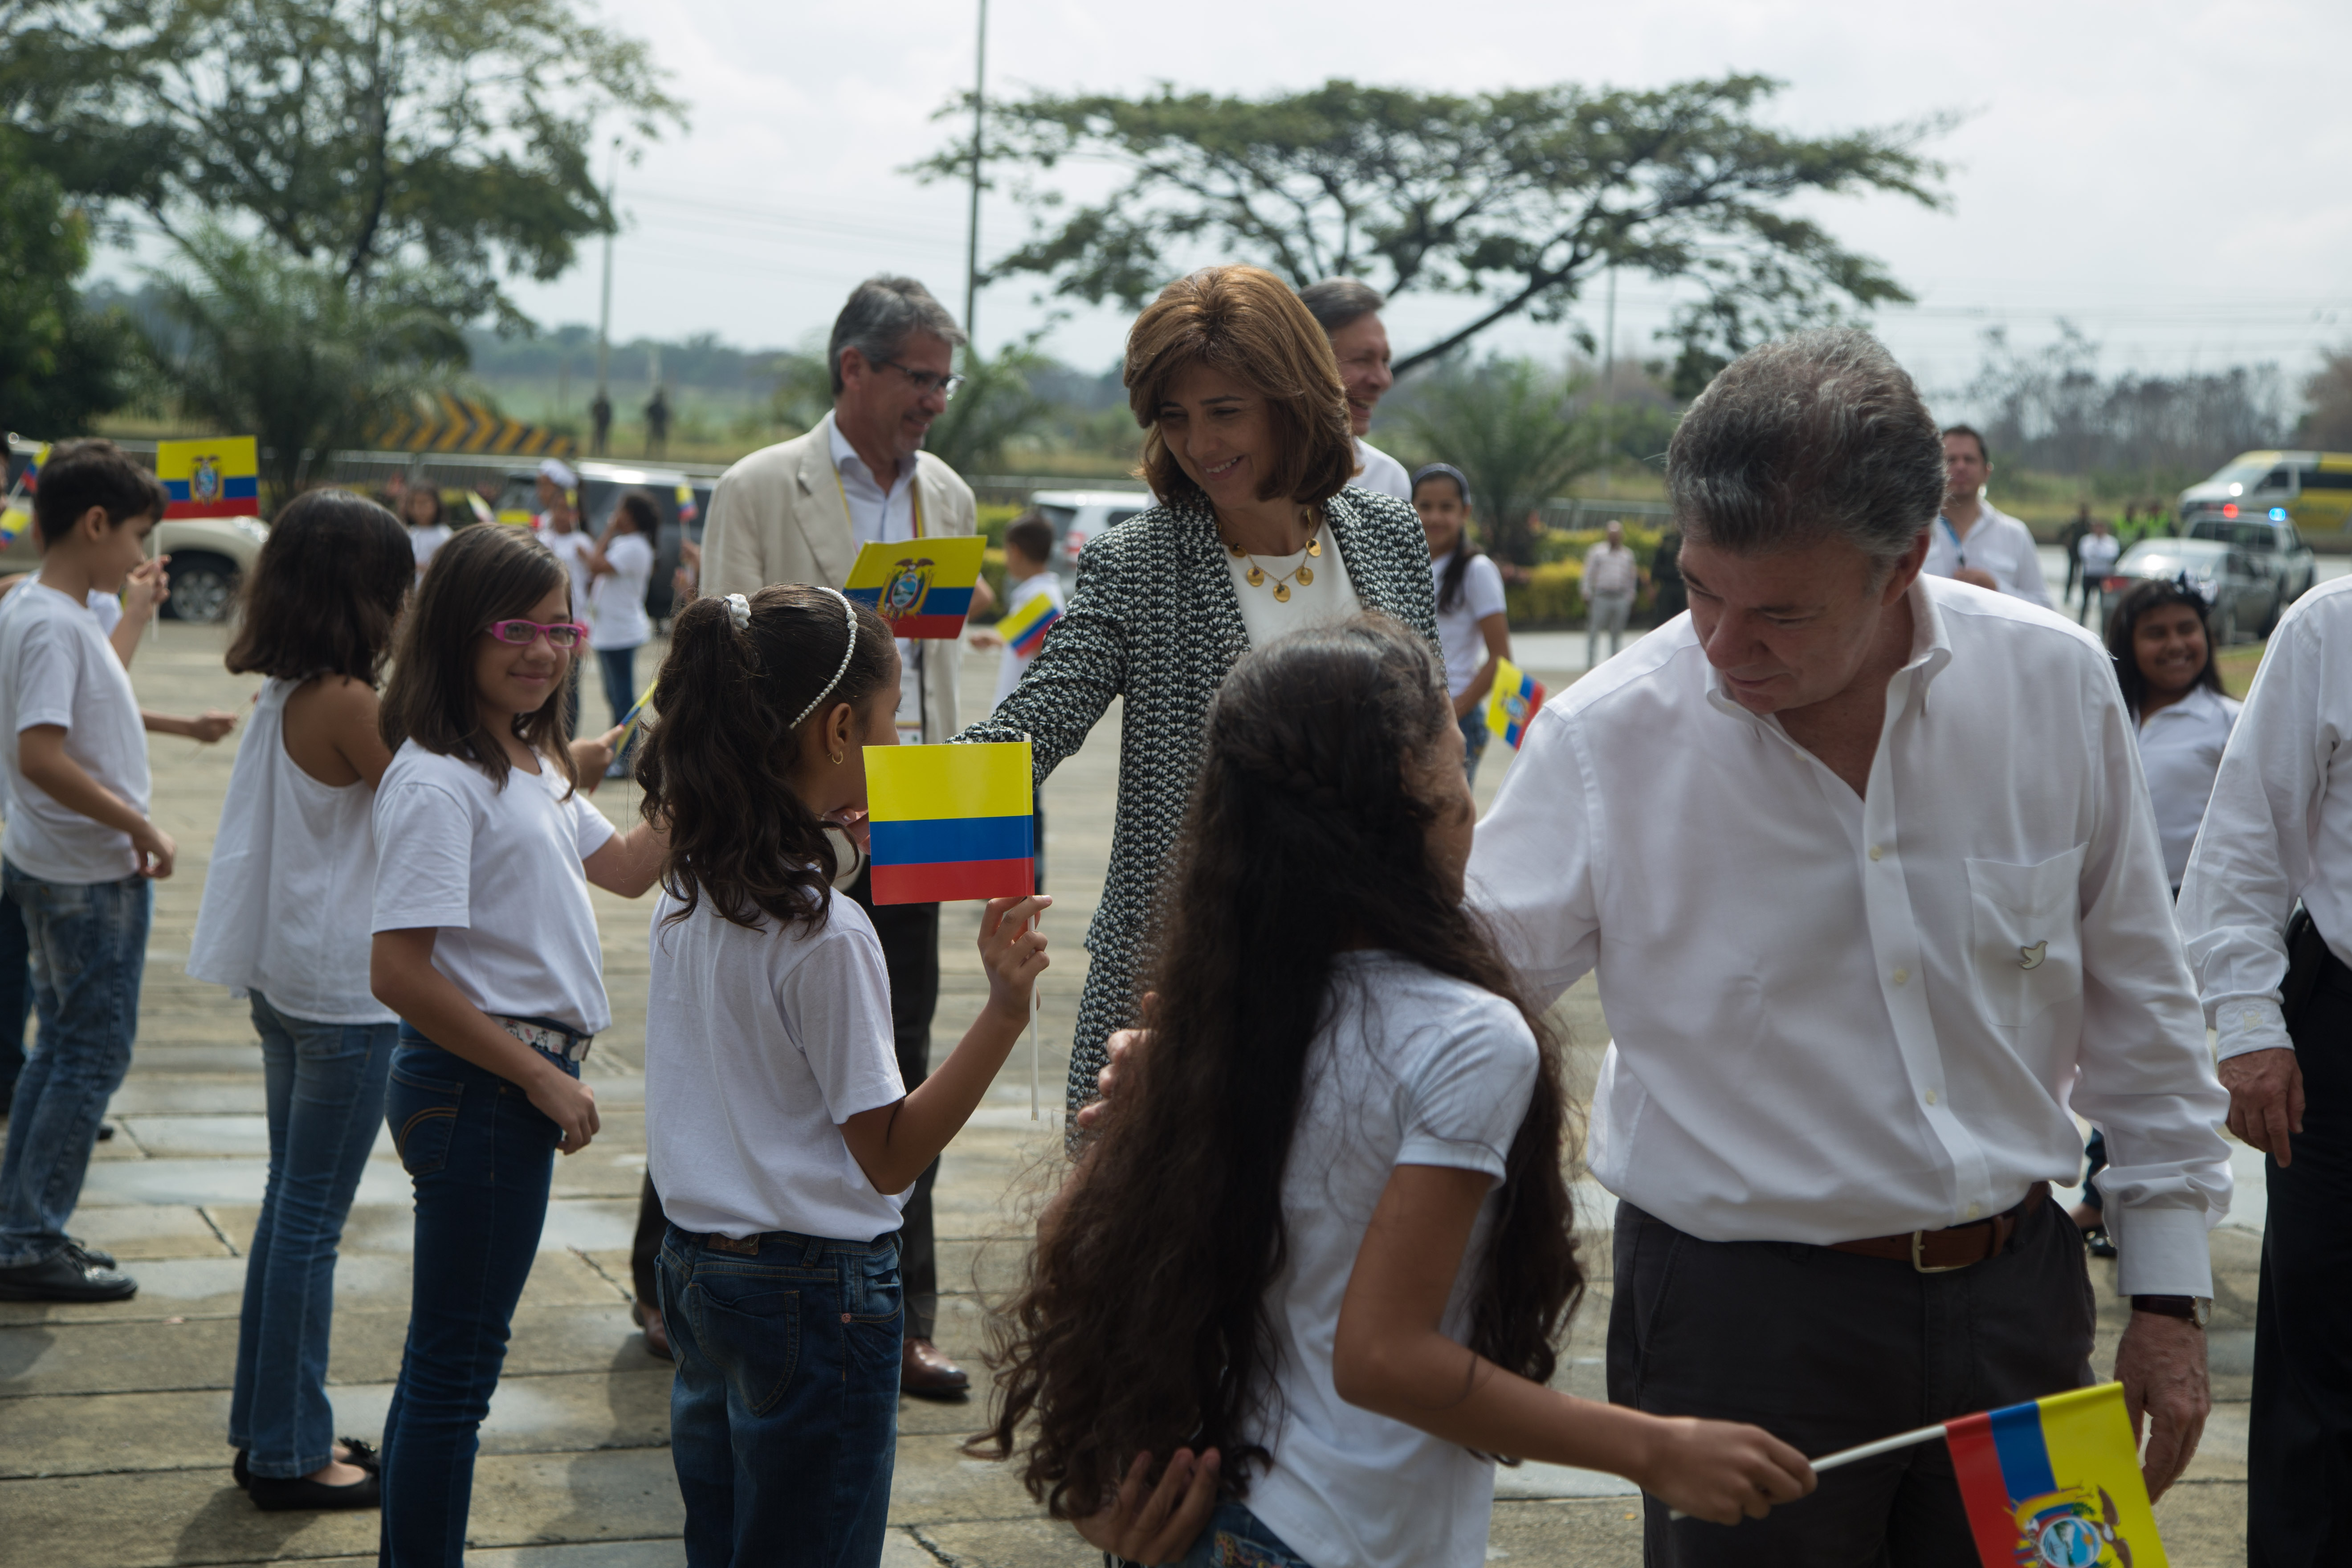 La Ministra de Cultura le explicó al Presidente Correa una dulce tradición vallecaucana: regalar macetas a los ahijados